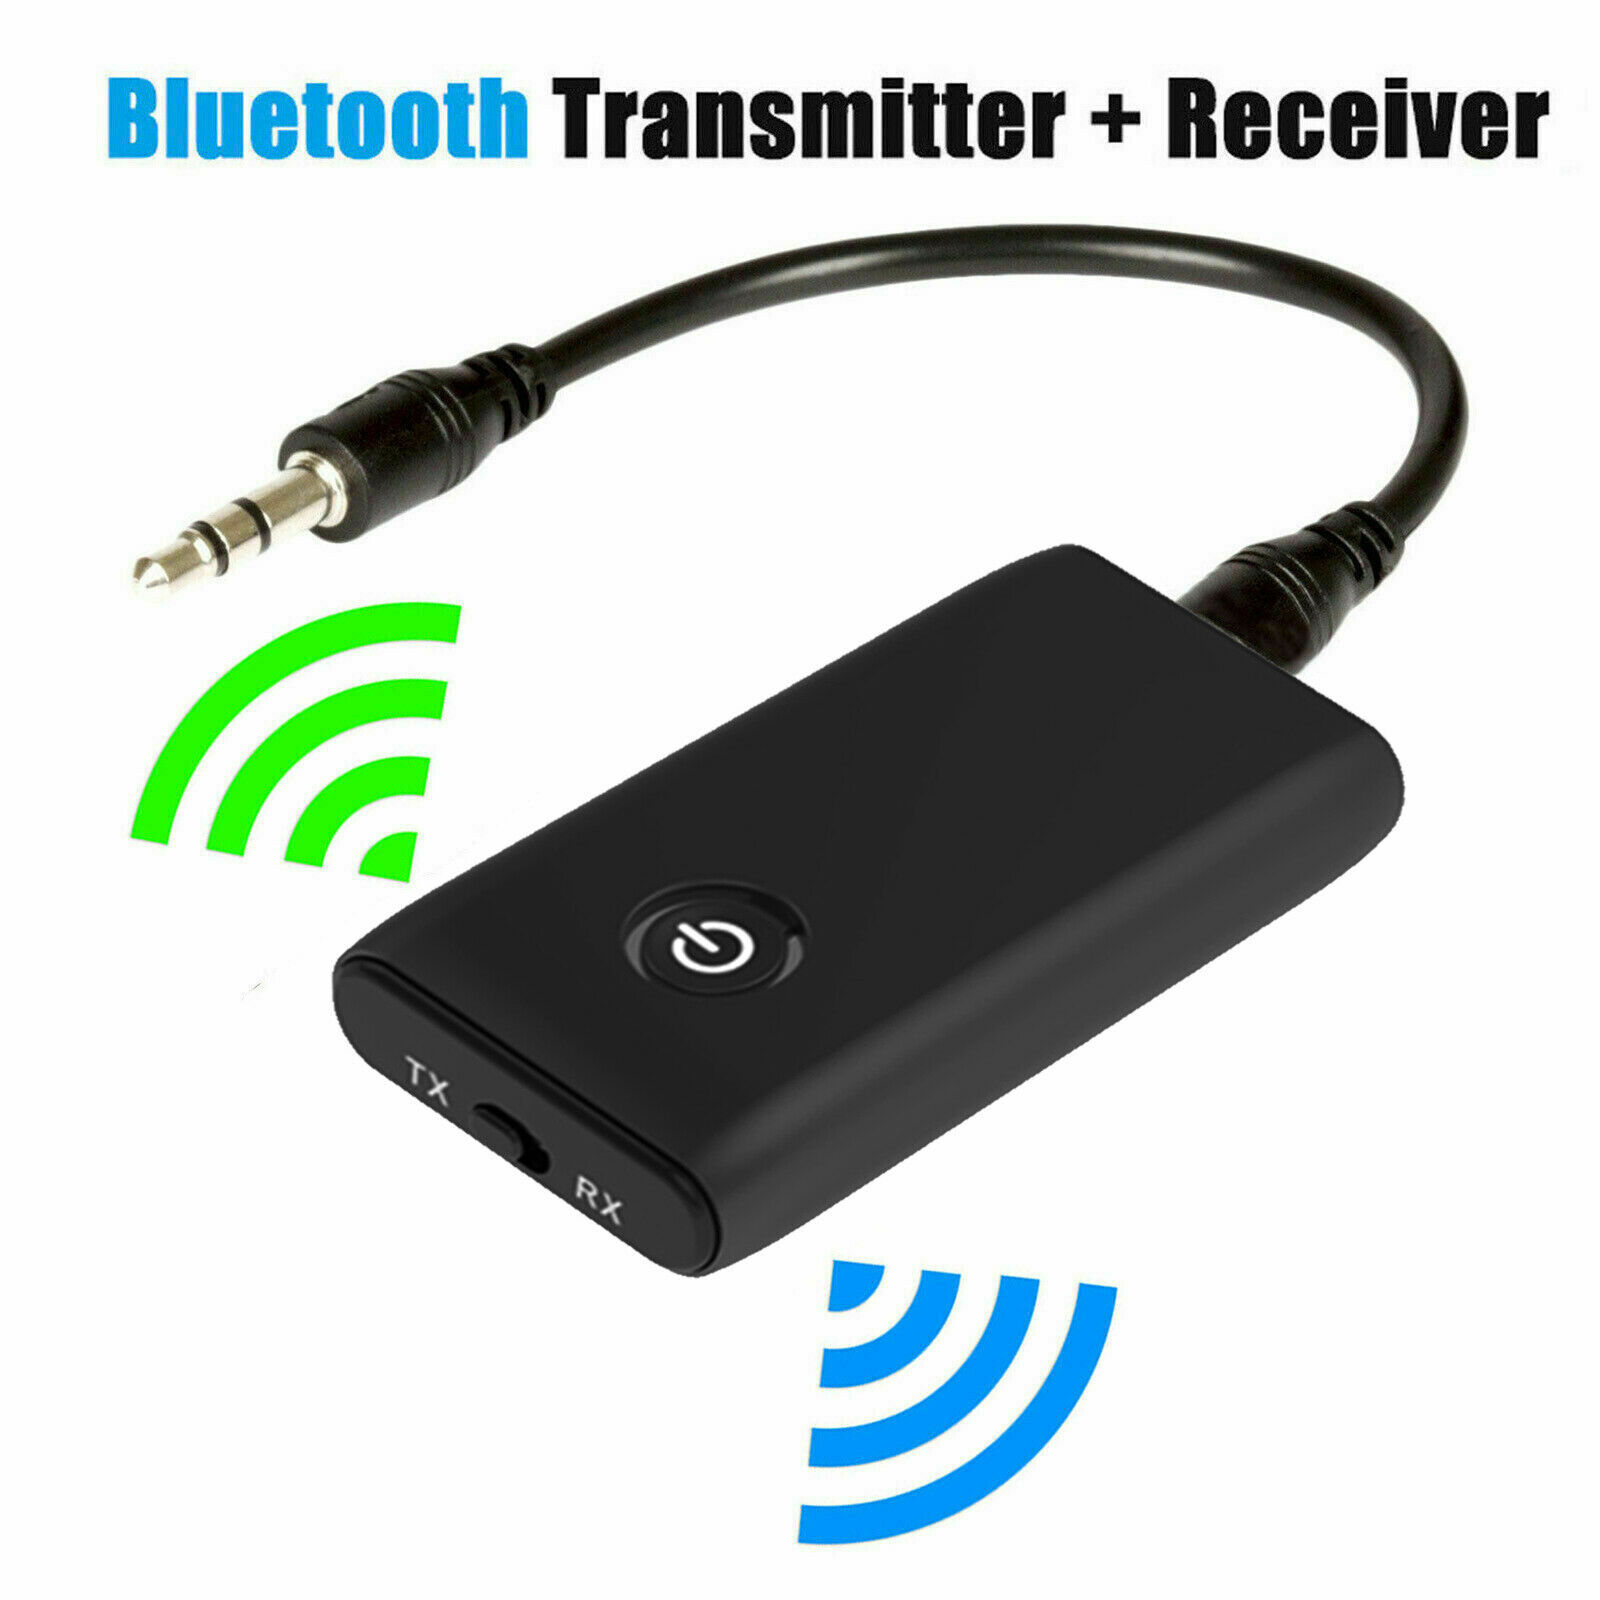 残りわずか】 Bluetooth5.0 超小型 トランスミッター レシーバー 受信機 送信機 一台二役 送受信両対応 6時間連続運転  充電しながら使用可 低遅延 ワイヤレス ブルートゥース オーディオ ワイヤレス非対応機器をカンタンにワイヤレス化